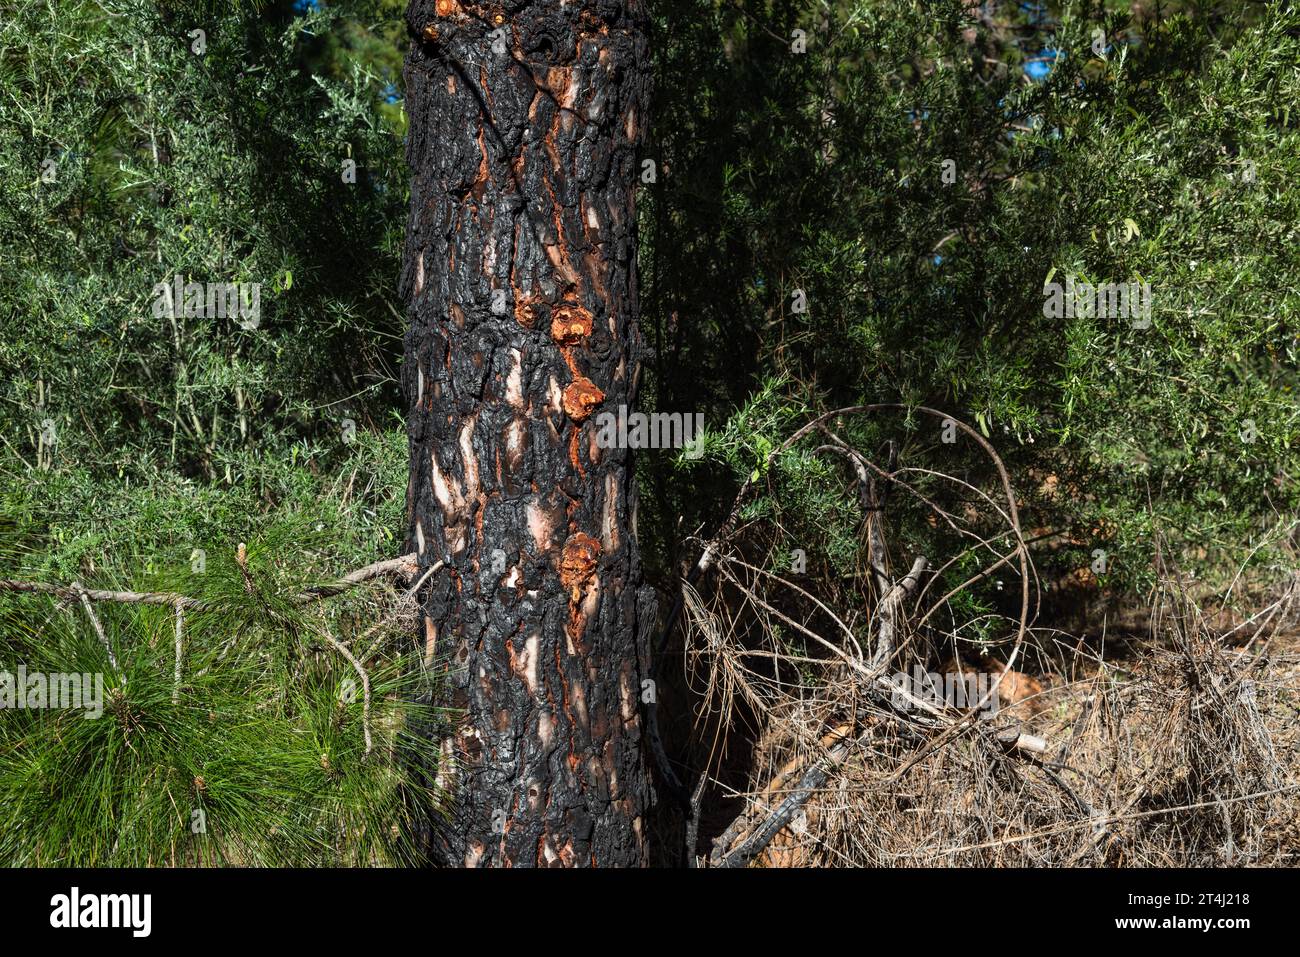 Écorce avec résine orange de pins canariens indigènes (Pinus canariensis) qui ont été brûlés dans un feu de forêt et sont maintenant en train de récupérer, Chinyero, Tenerife Banque D'Images